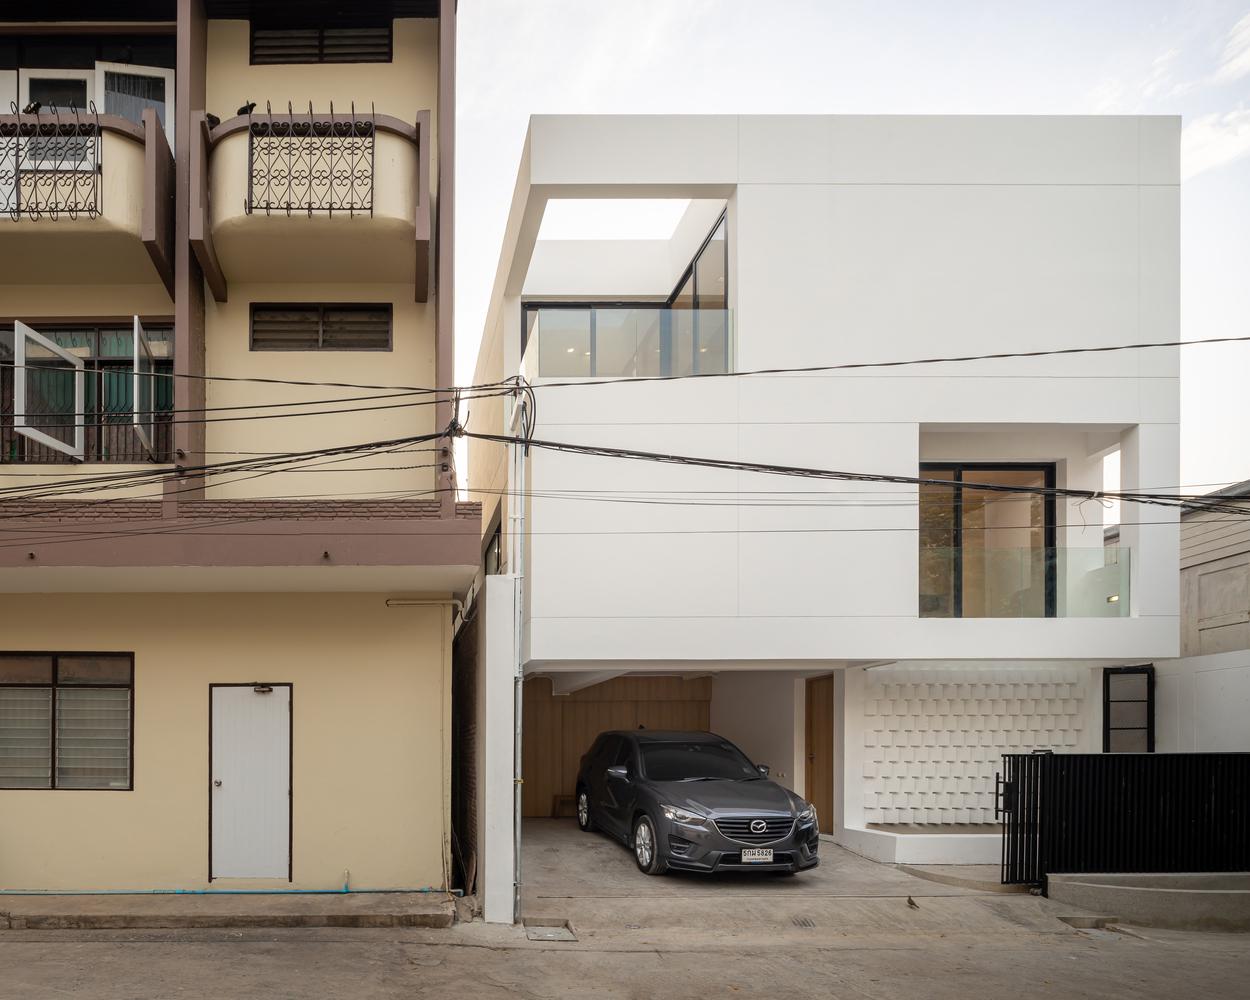 倆口子的安樂窩：參考泰國曼谷住宅設計 善用空間締造舒適家居